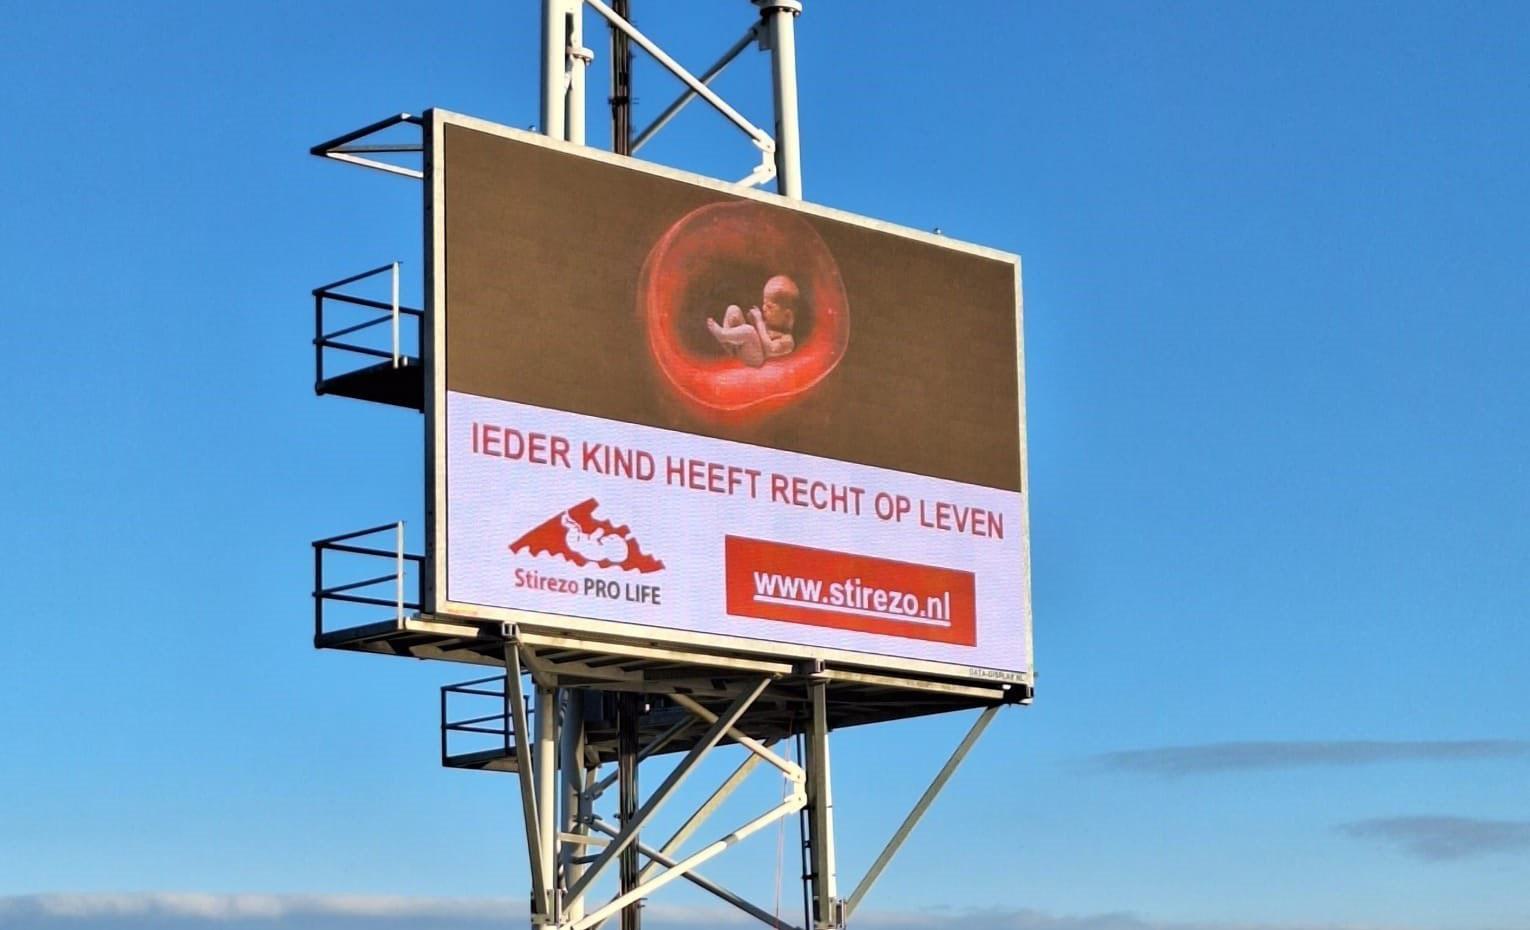 Stirezo plaatst billboards tegen abortus: “Ieder kind heeft recht op leven”